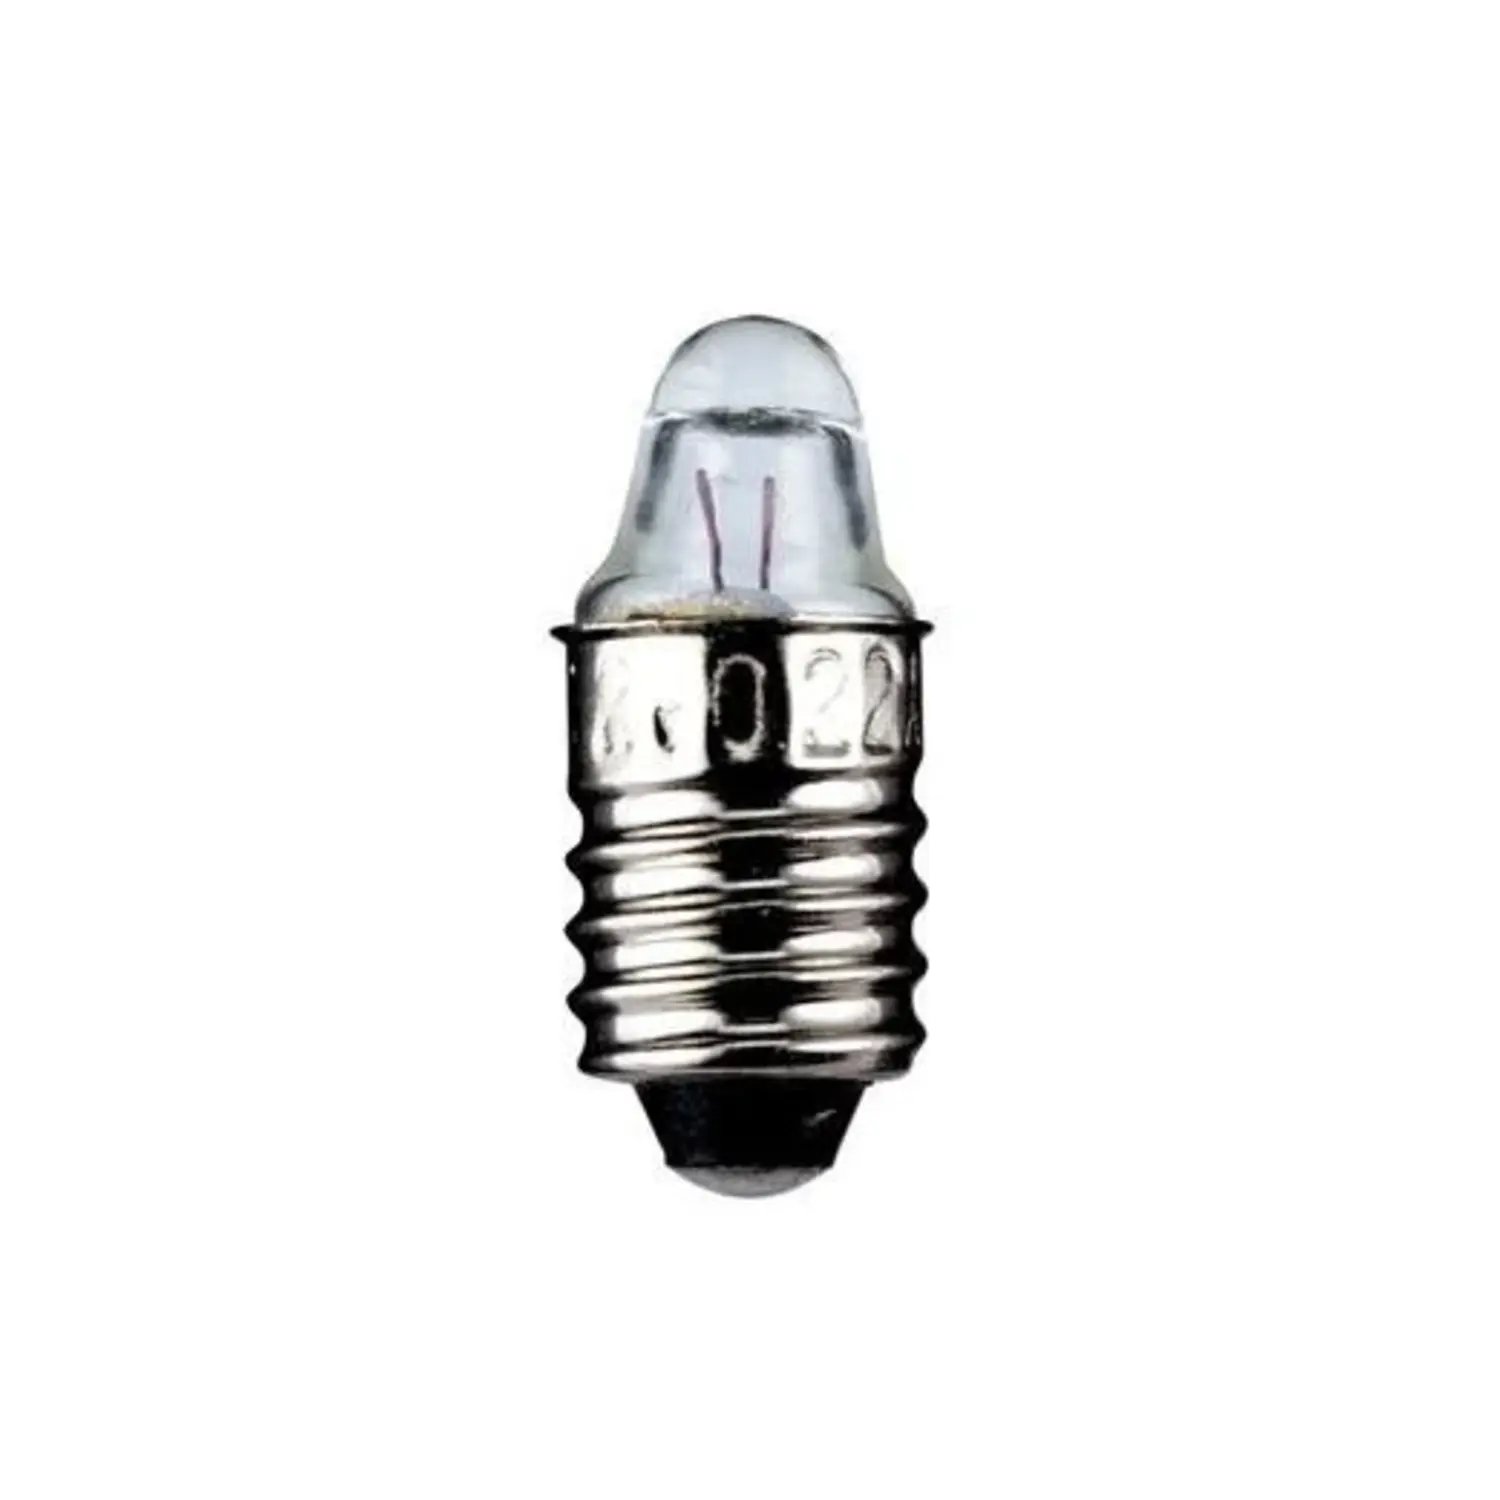 immagine del prodotto lampadina a faretto appuntita 0.75 watt trasparente E10 CE bianco caldo 2,5 volt wnt 9333